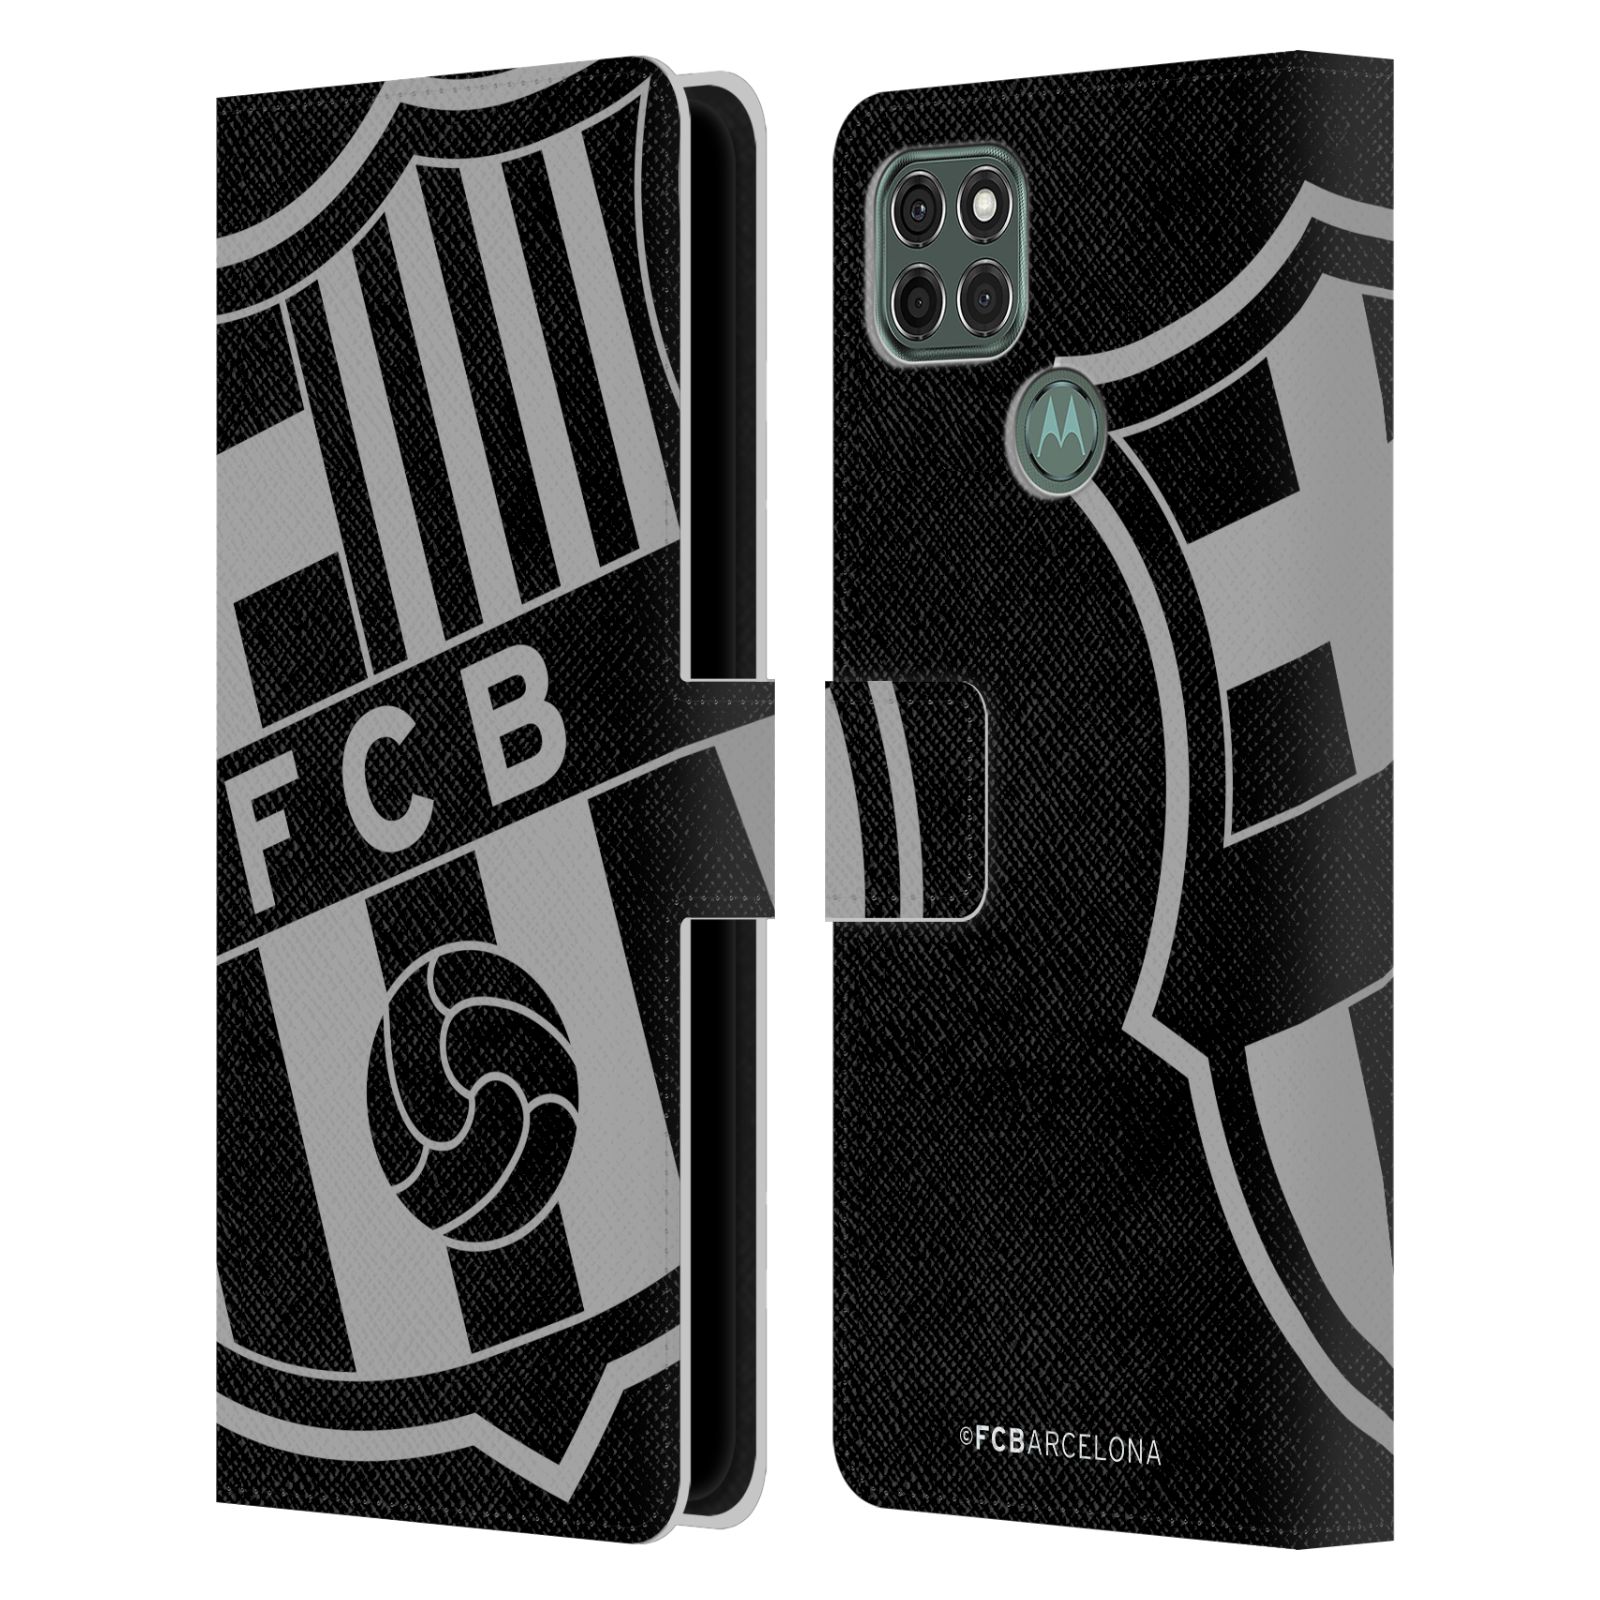 Pouzdro na mobil Motorola Moto G9 POWER - HEAD CASE - FC Barcelona - černošedé logo